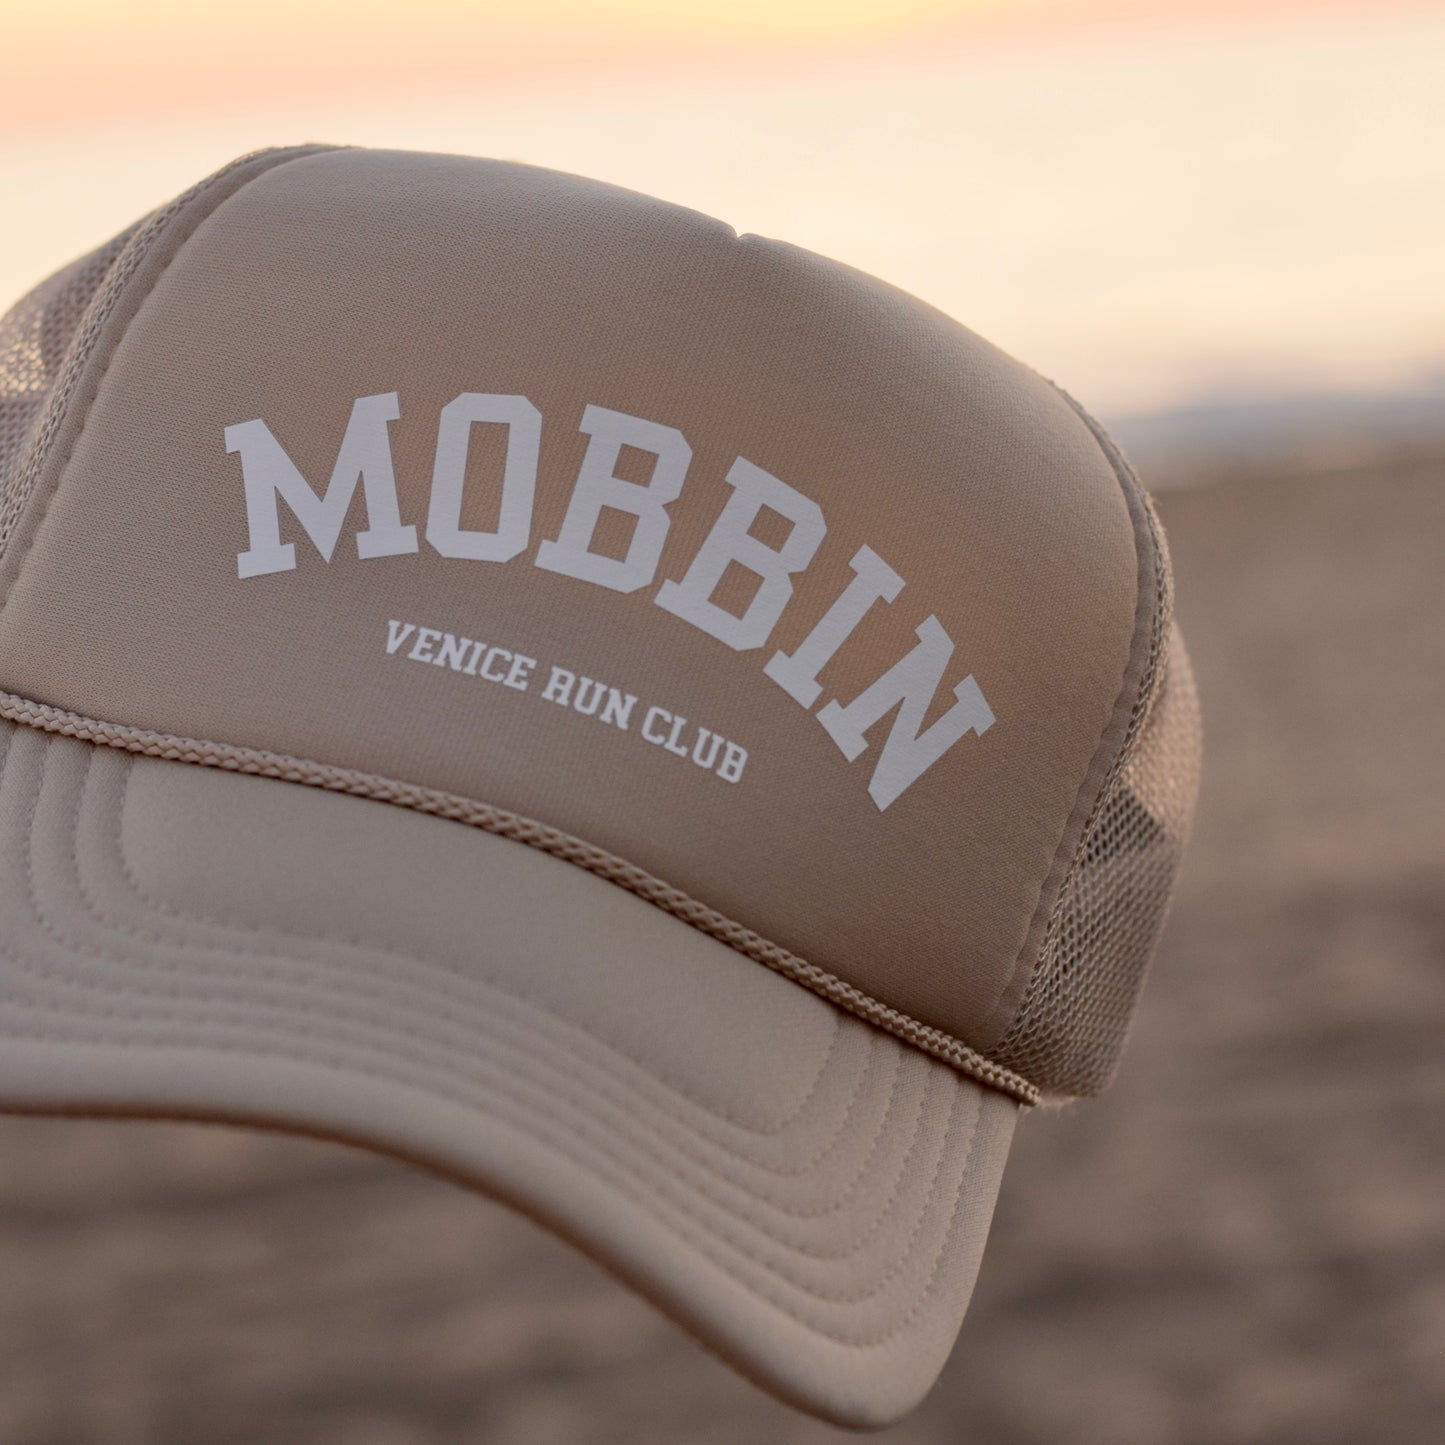 Mobbin Khaki Hat